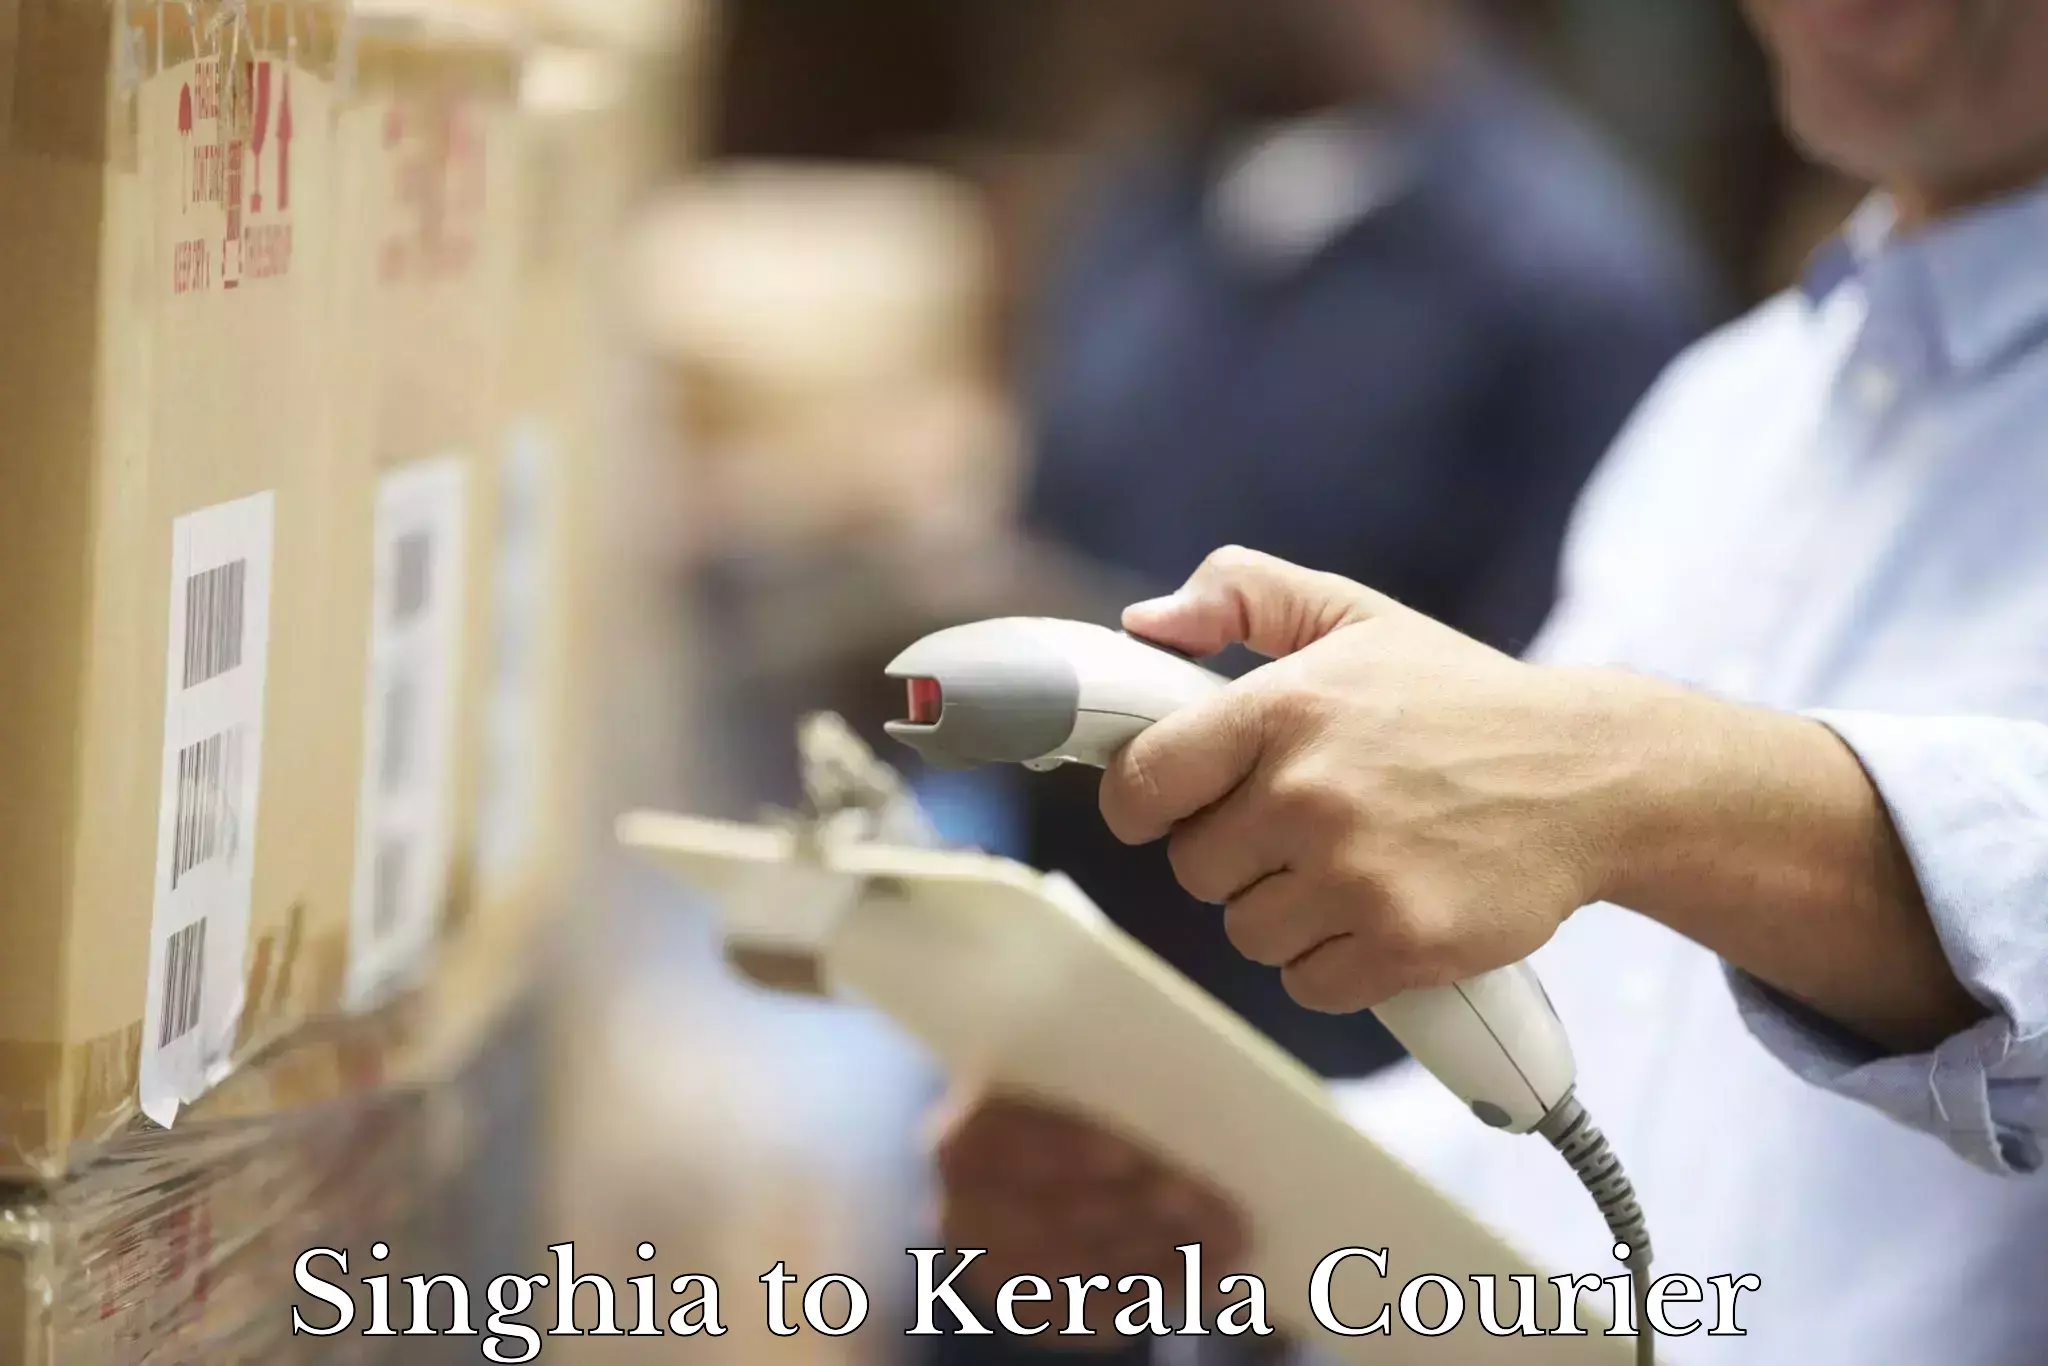 Courier service comparison Singhia to Kuttikol